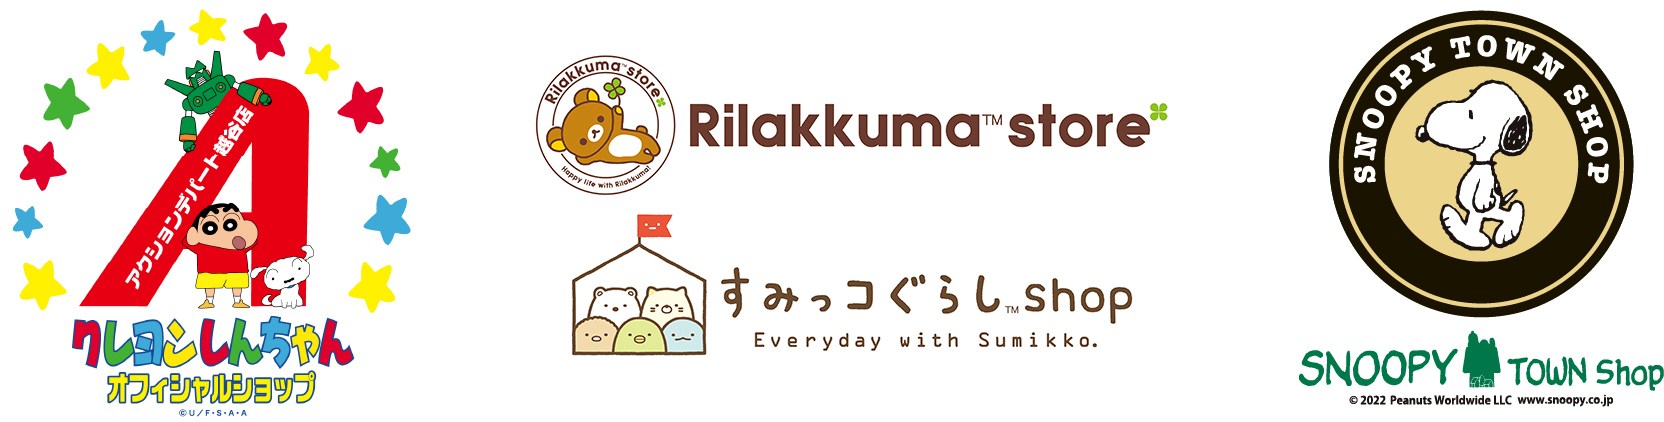 クレヨンしんちゃんオフィシャルショップのロゴ/Rilakkuma storeのロゴ/すみっコぐらし shopのロゴ/SNOOPY TOWN Shopのロゴ